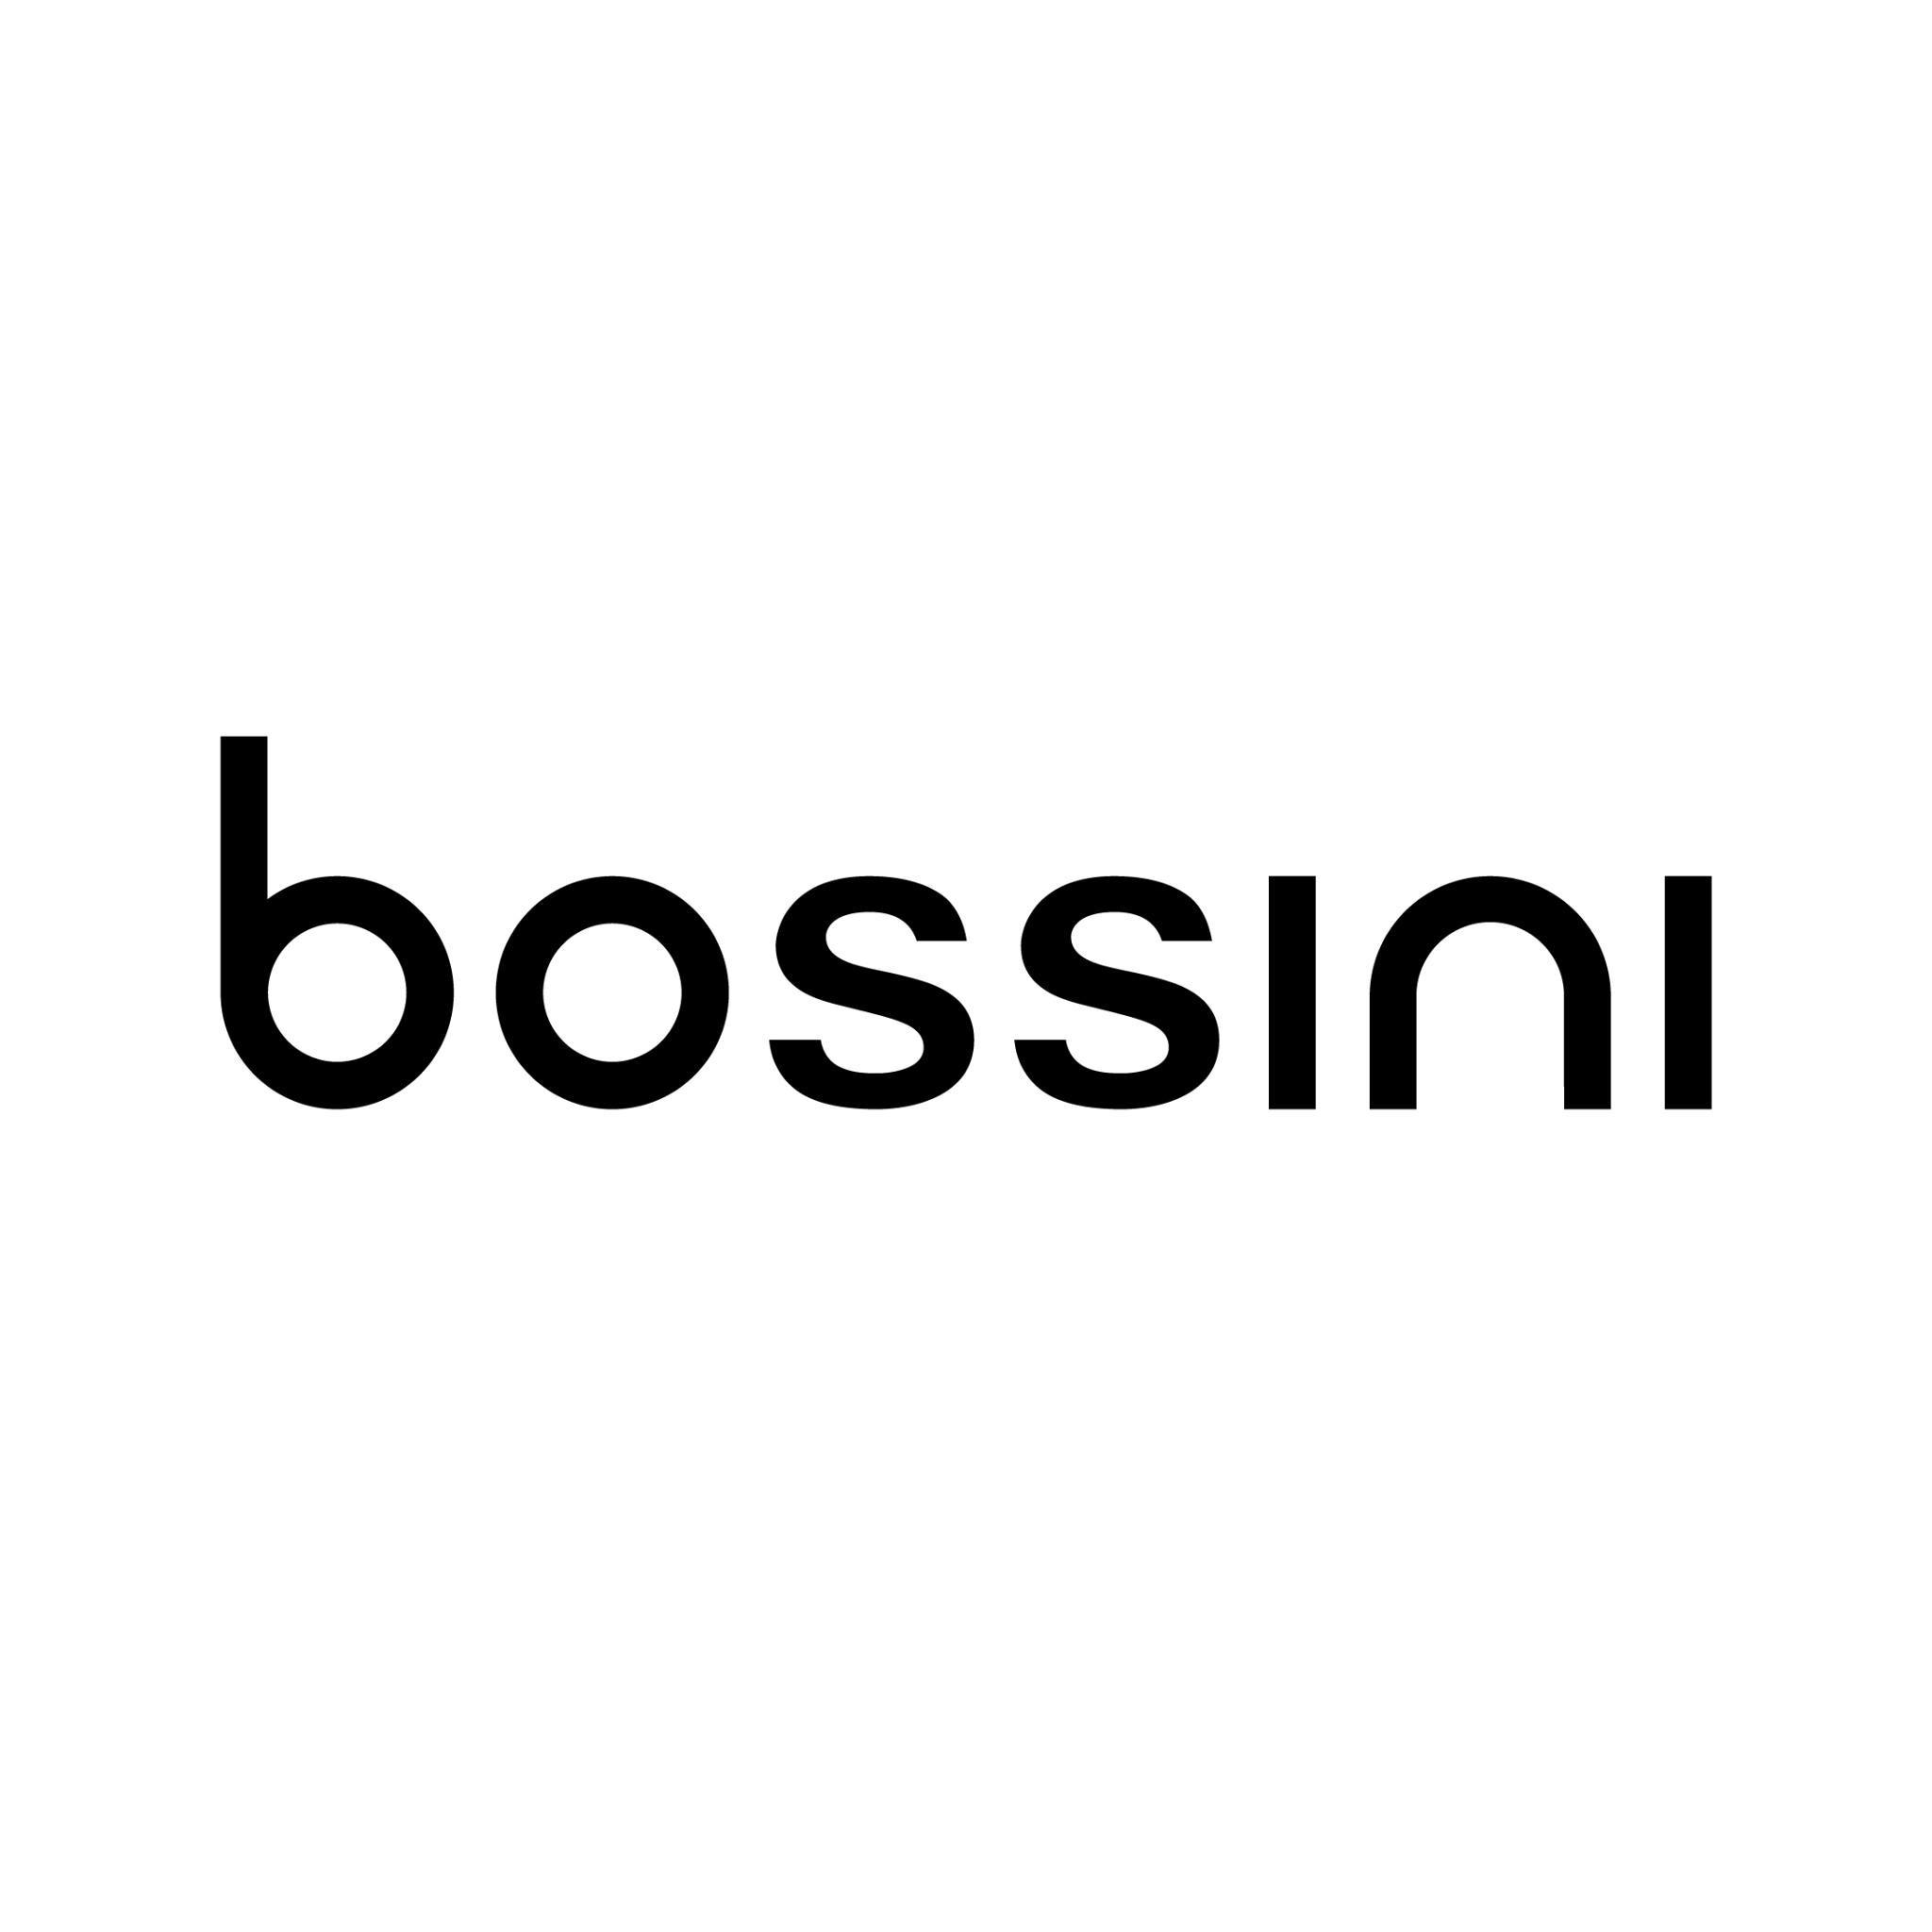 Bossini